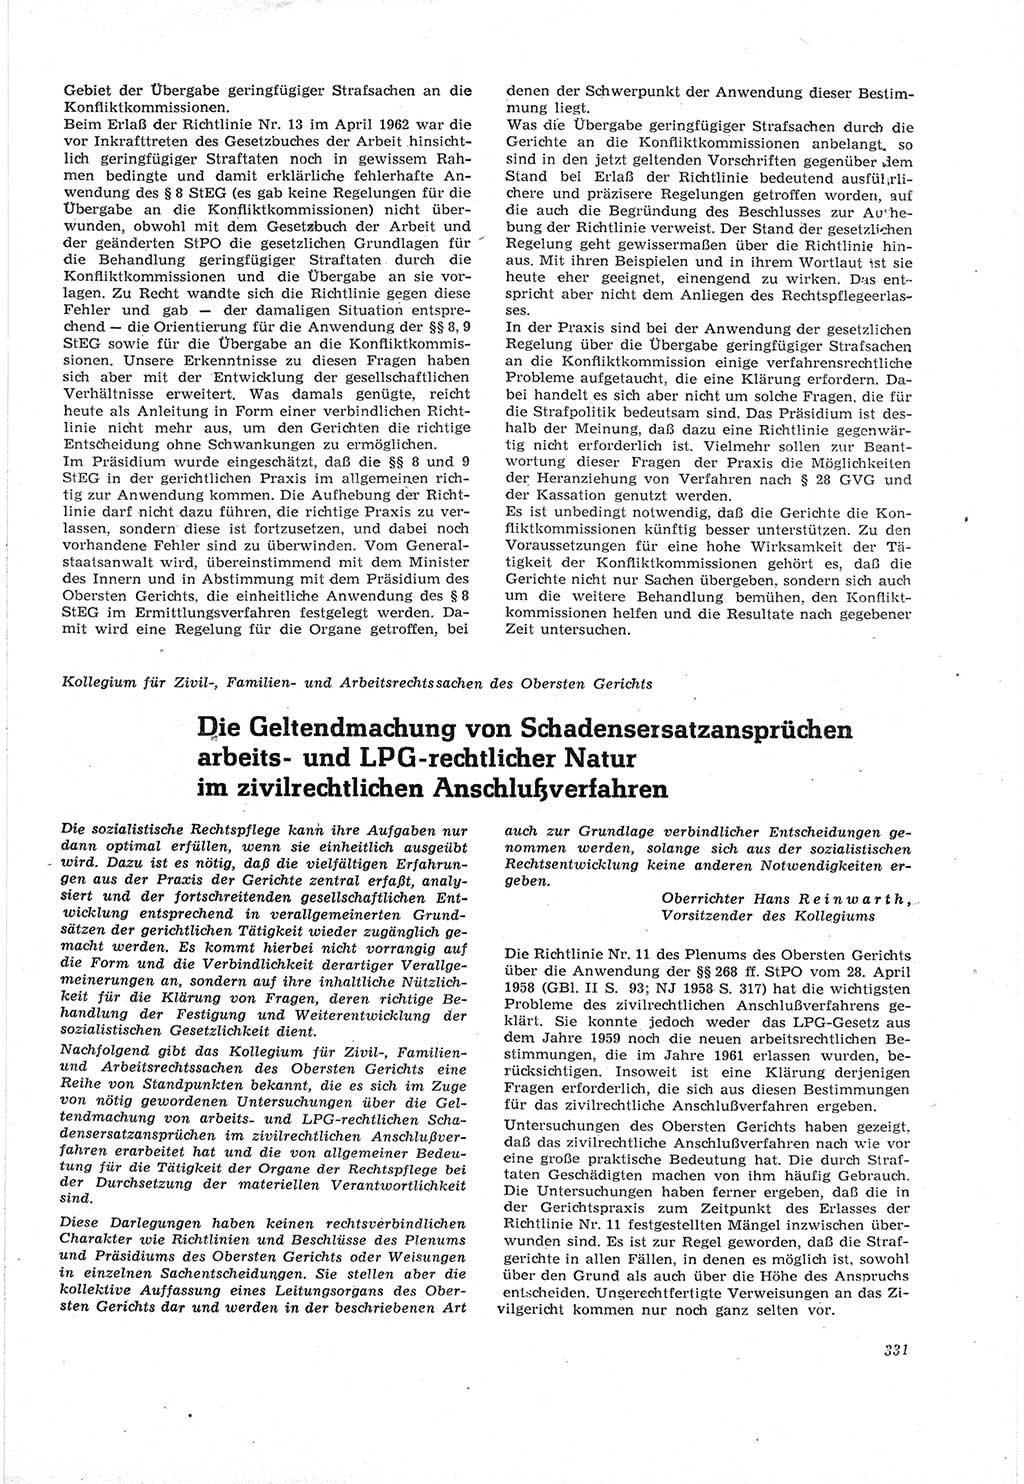 Neue Justiz (NJ), Zeitschrift für Recht und Rechtswissenschaft [Deutsche Demokratische Republik (DDR)], 18. Jahrgang 1964, Seite 331 (NJ DDR 1964, S. 331)